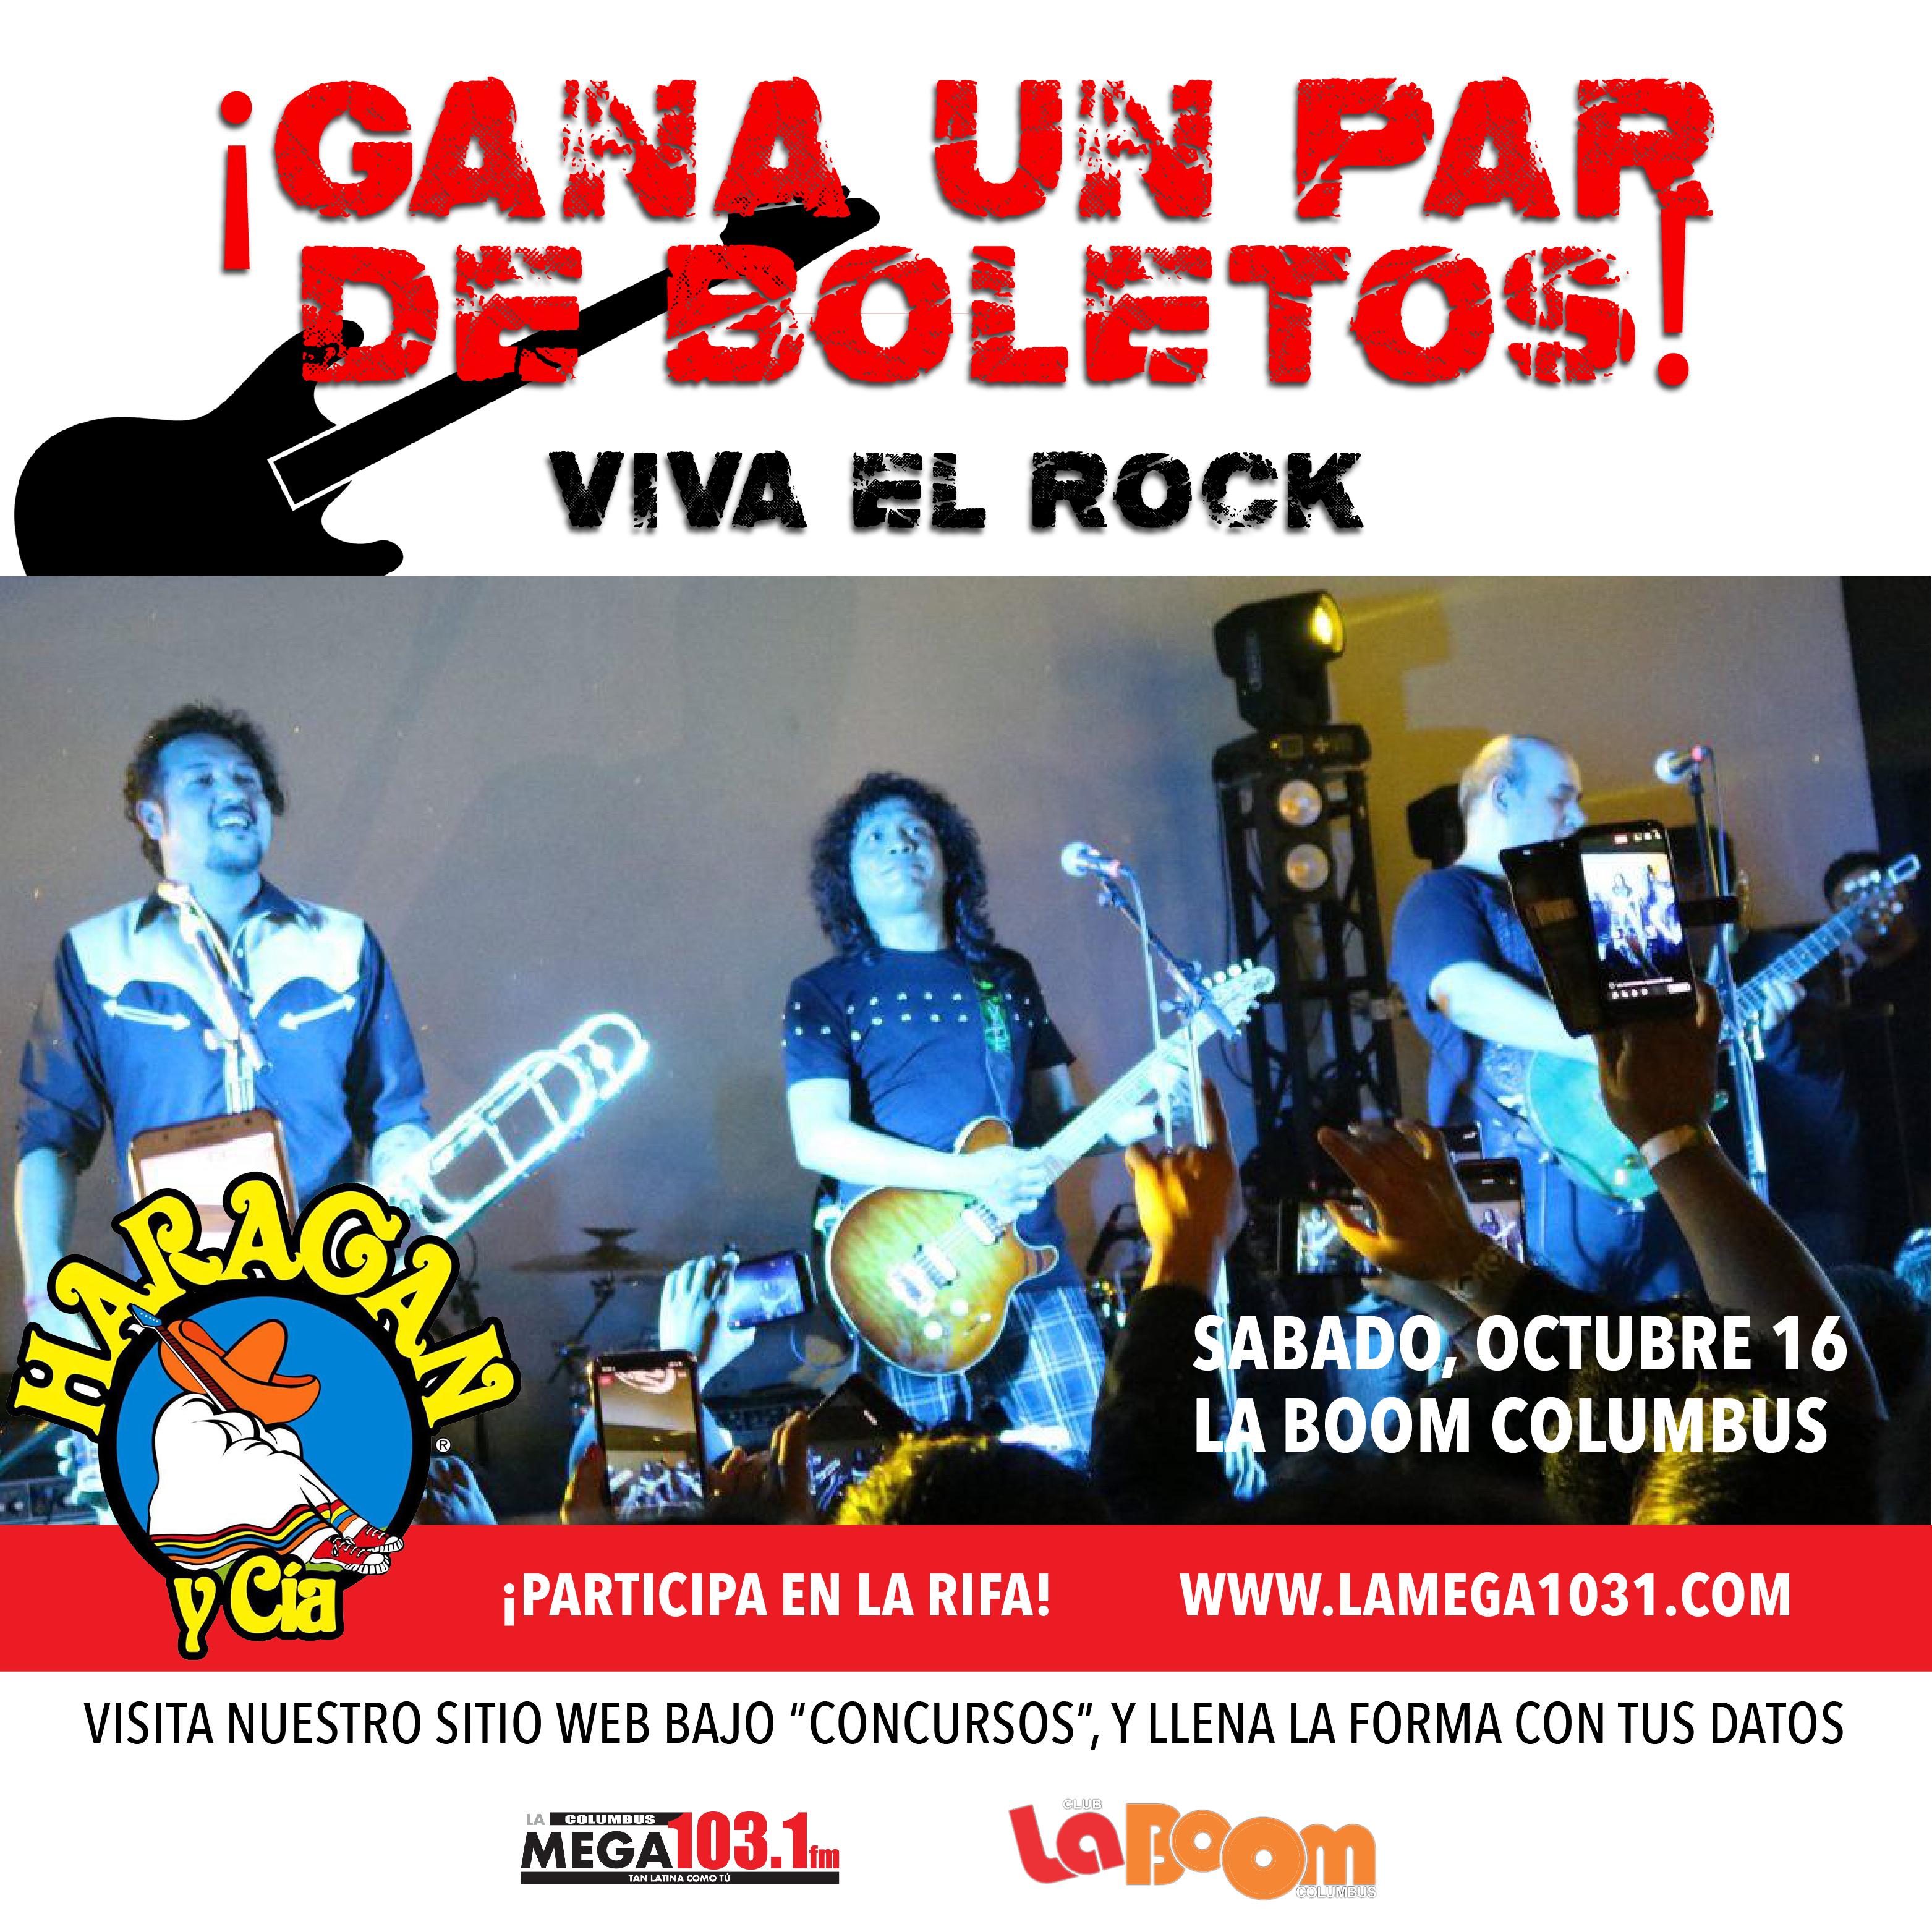 Viva el Rock! Gana boletos para El Haragán y Cia